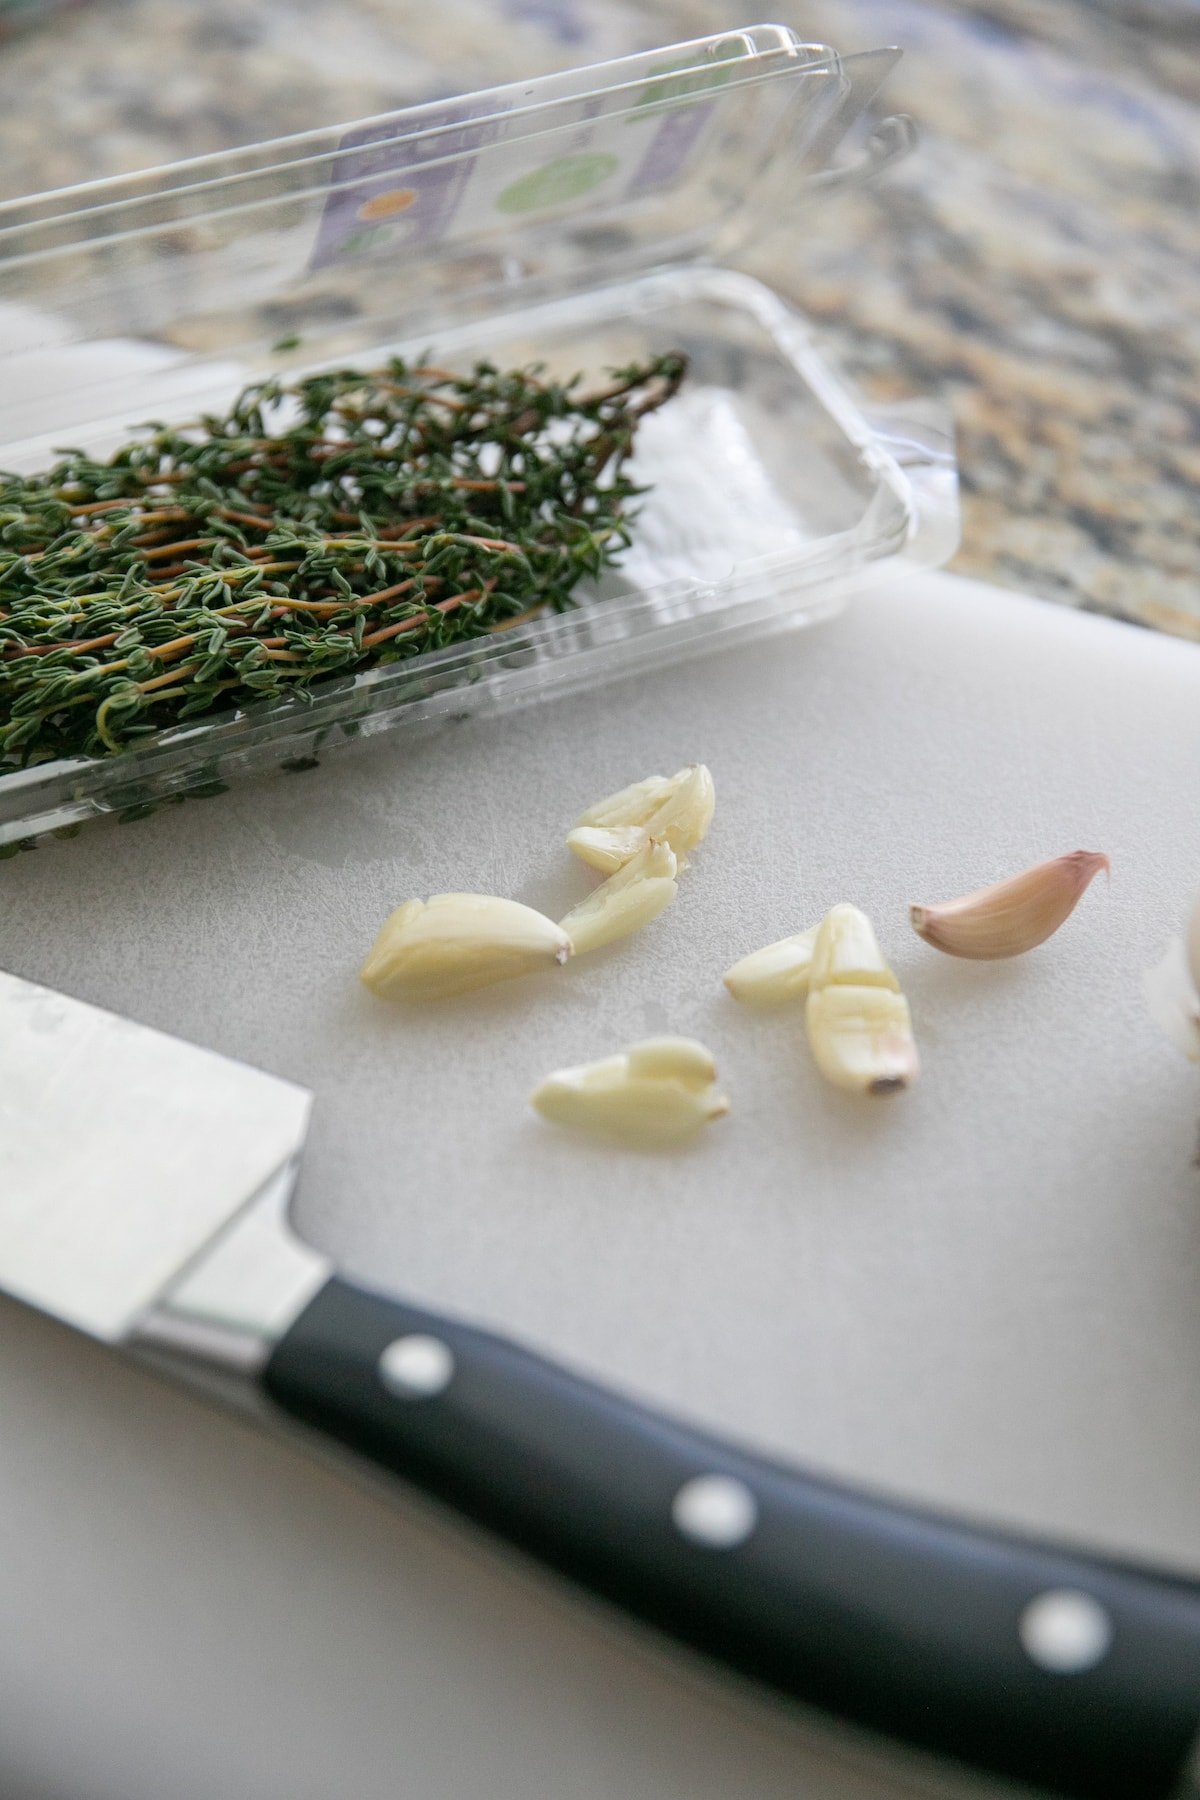 garlic and herbs on cutting board